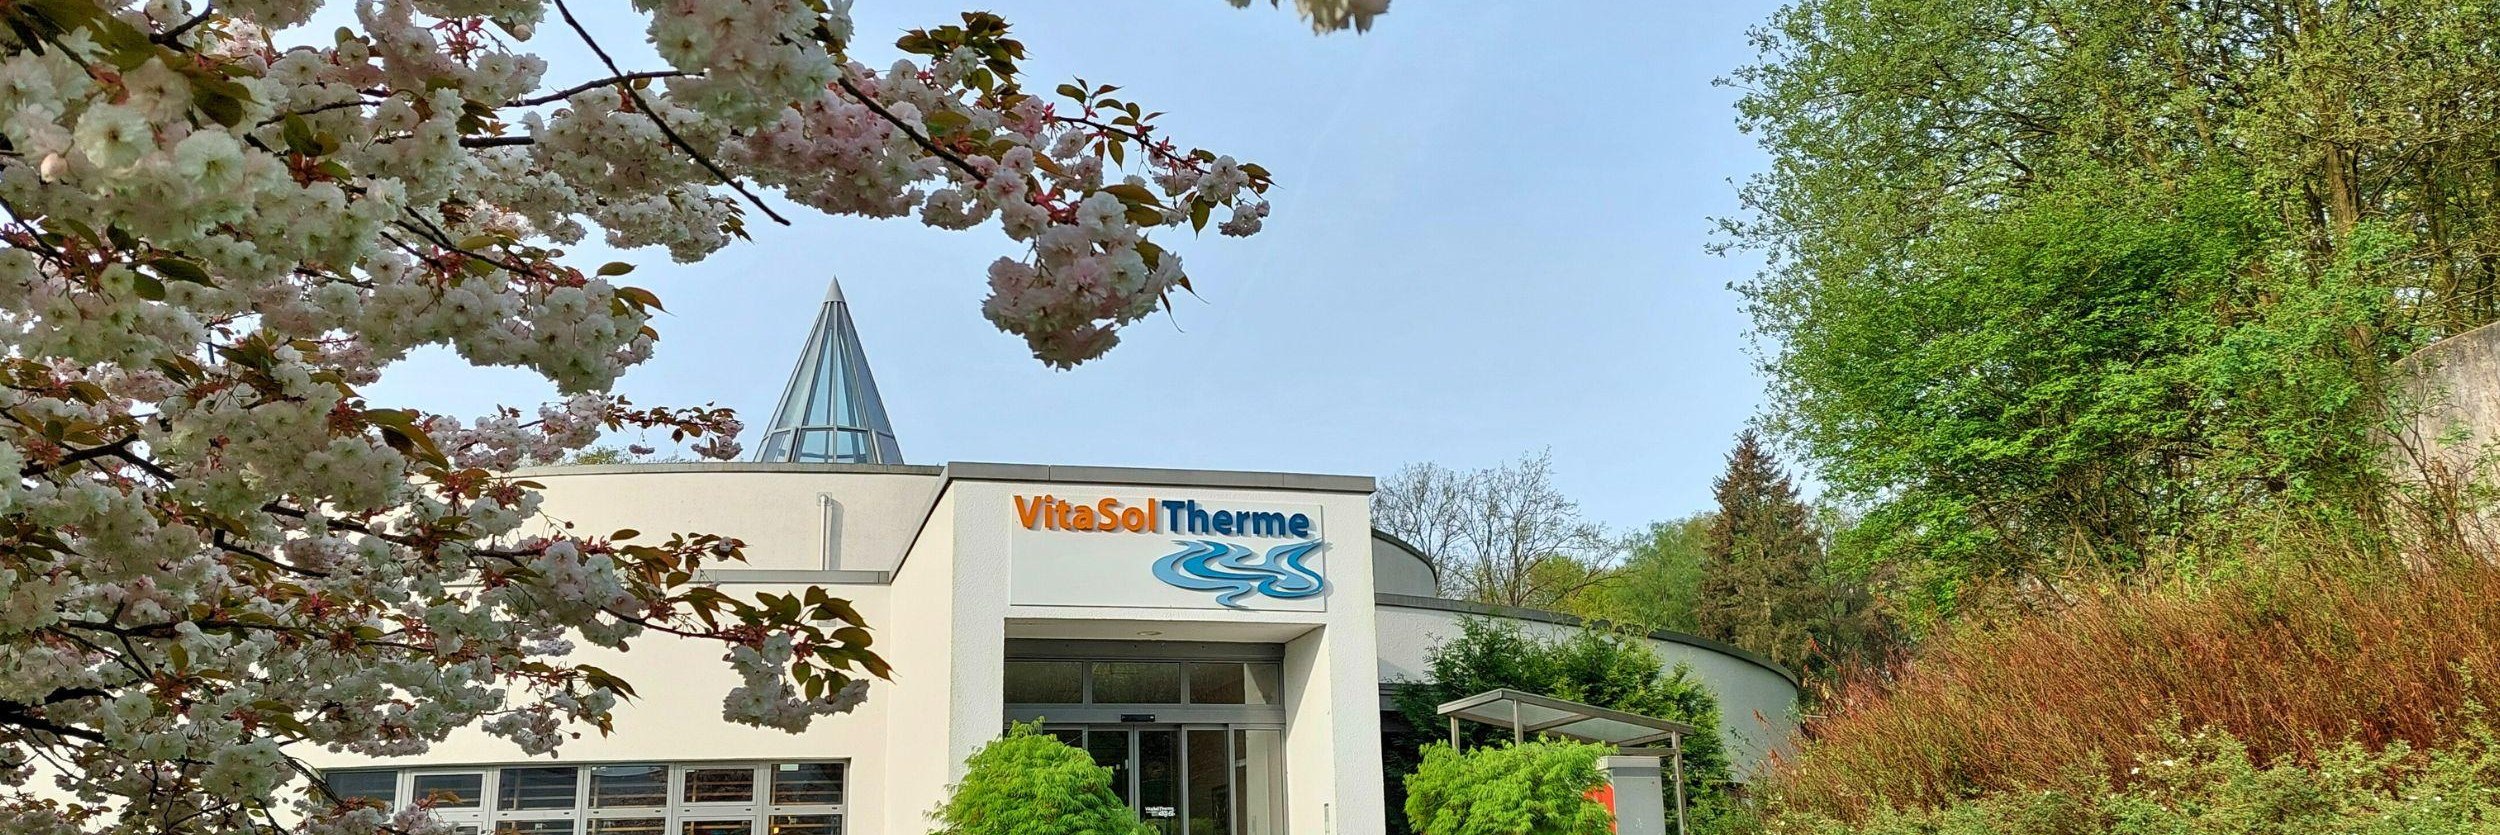 VitaSol Therme am Landschaftsgarten Bad Salzuflen